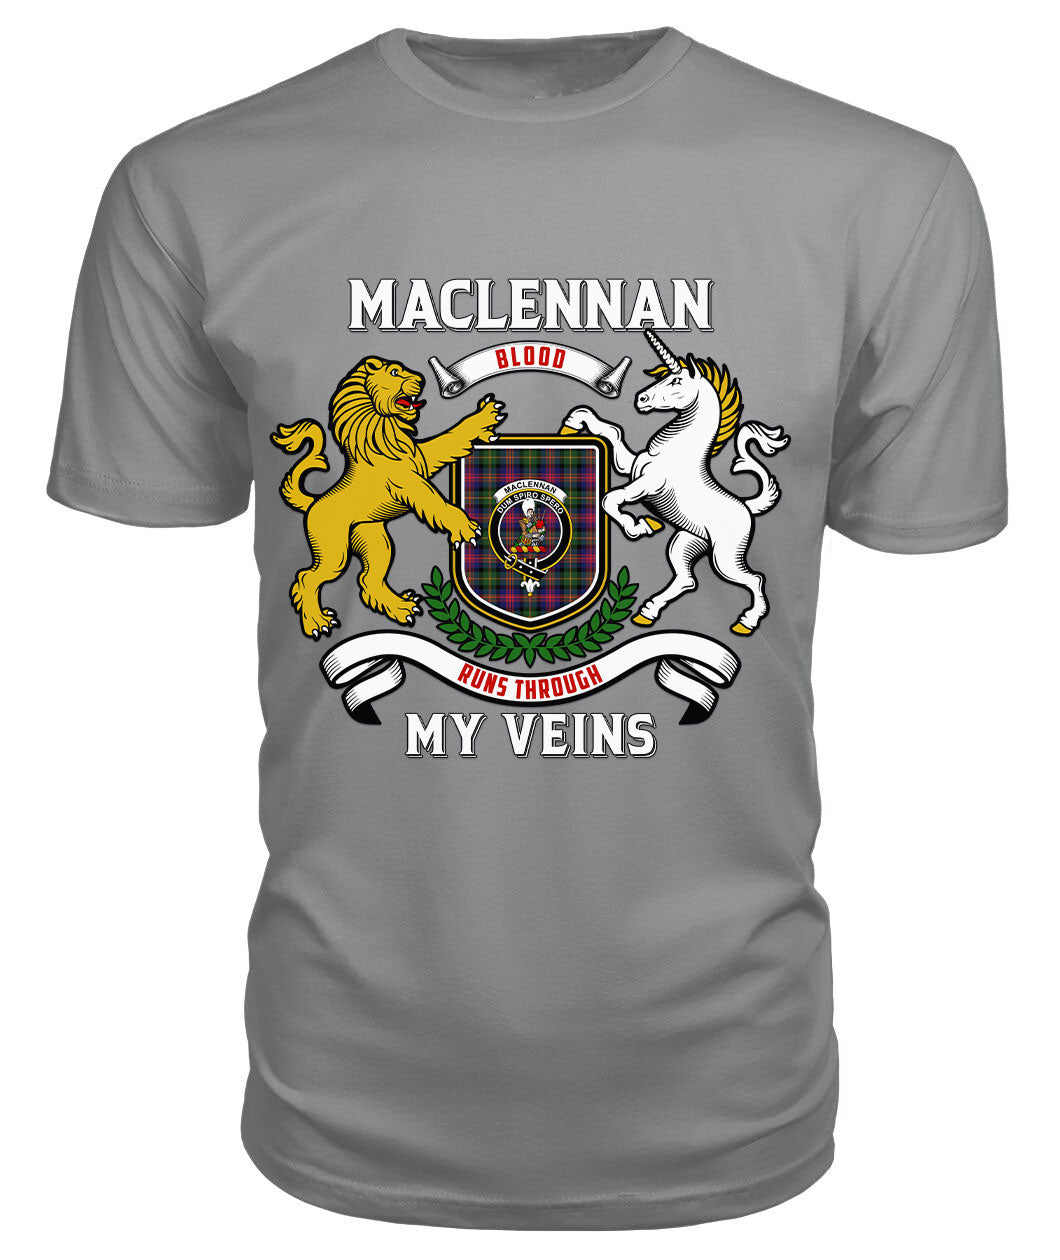 MacLennan Modern Tartan Crest 2D T-shirt - Blood Runs Through My Veins Style